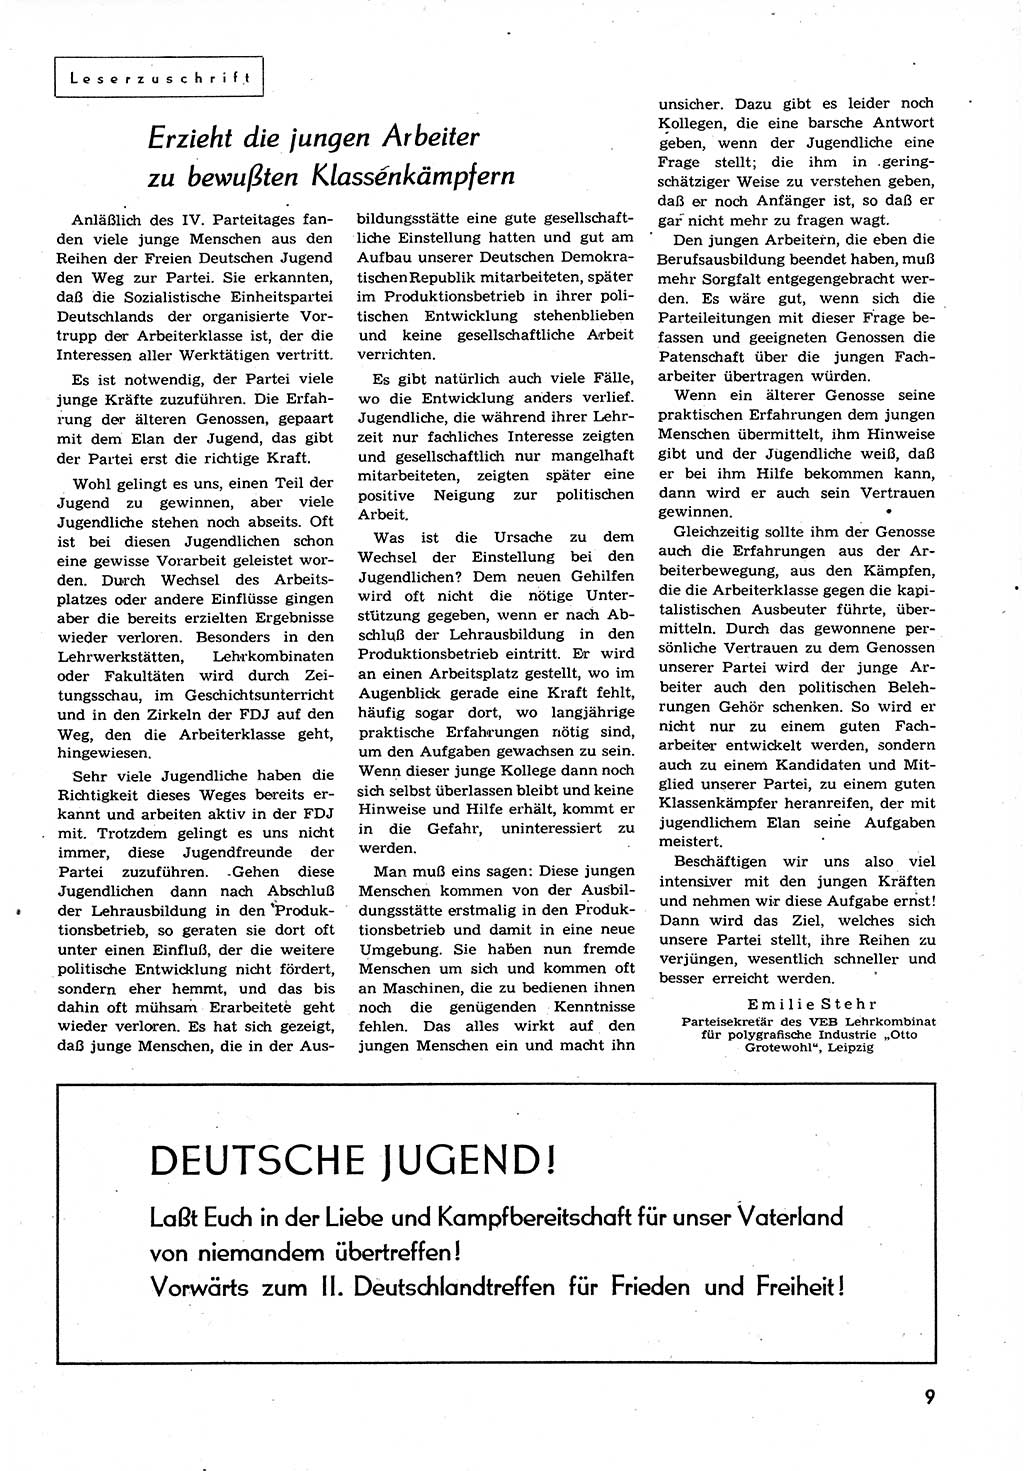 Neuer Weg (NW), Organ des Zentralkomitees (ZK) der SED (Sozialistische Einheitspartei Deutschlands) für alle Parteiarbeiter, 9. Jahrgang [Deutsche Demokratische Republik (DDR)] 1954, Heft 9/9 (NW ZK SED DDR 1954, H. 9/9)